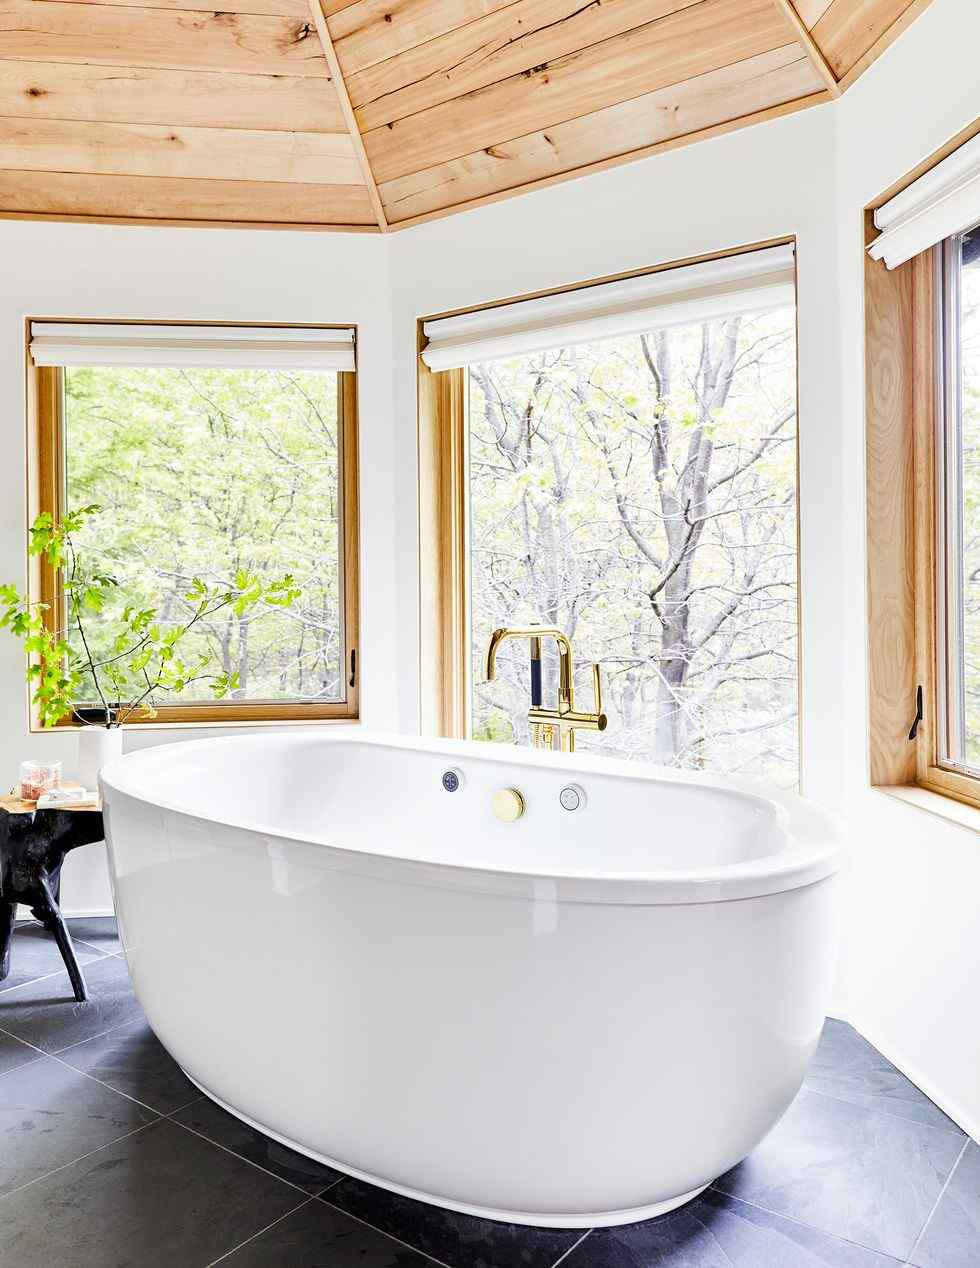 10+ Modern Bathroom Ideas to Make Bathroom Go from Drab to Dazzling